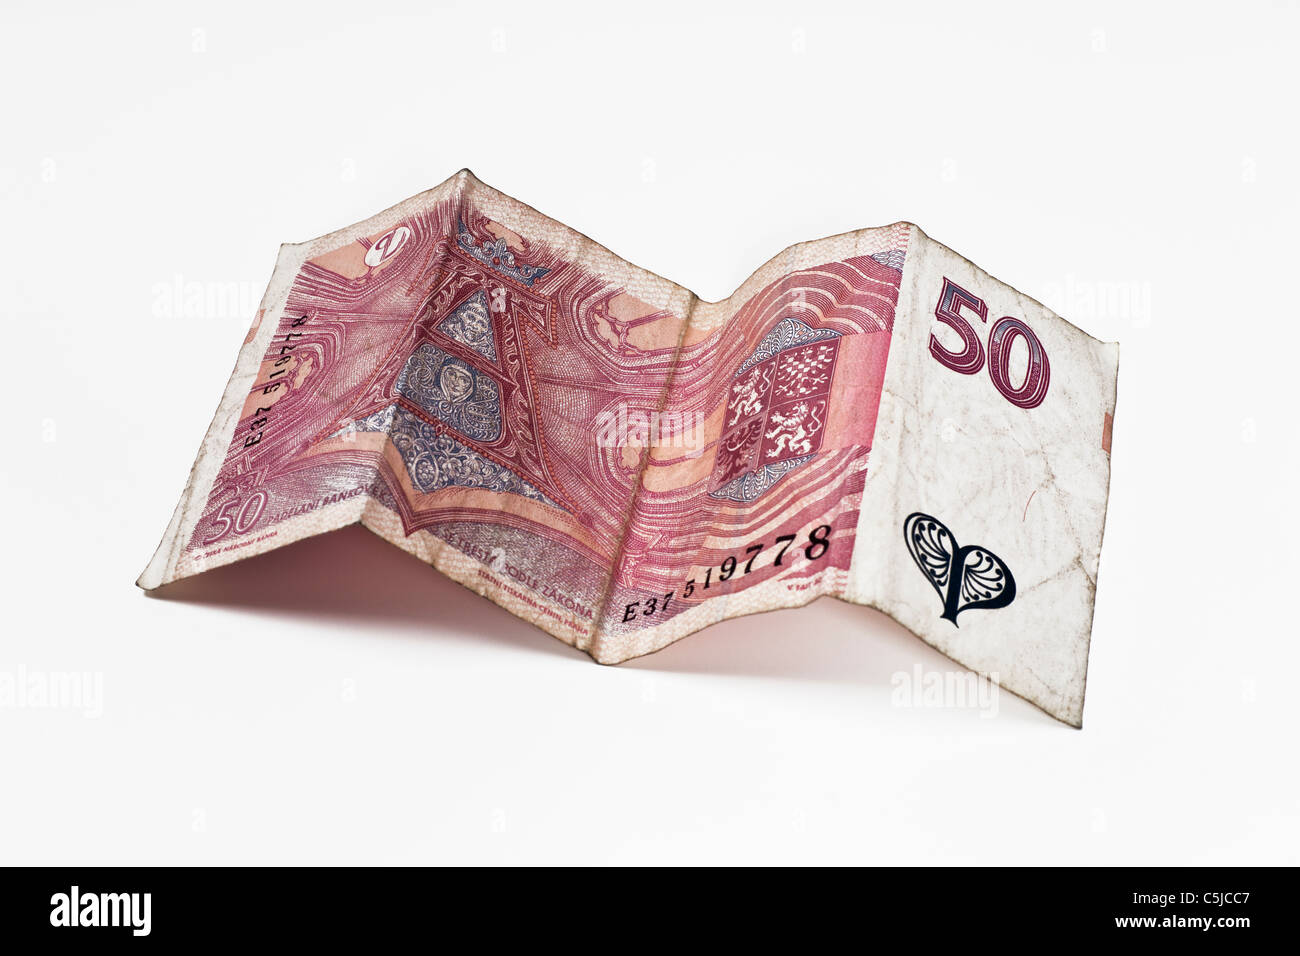 Rückseite einer tschechischen 50 Kronen Banknote | back side of a czech 50 koruna Banknote Stock Photo